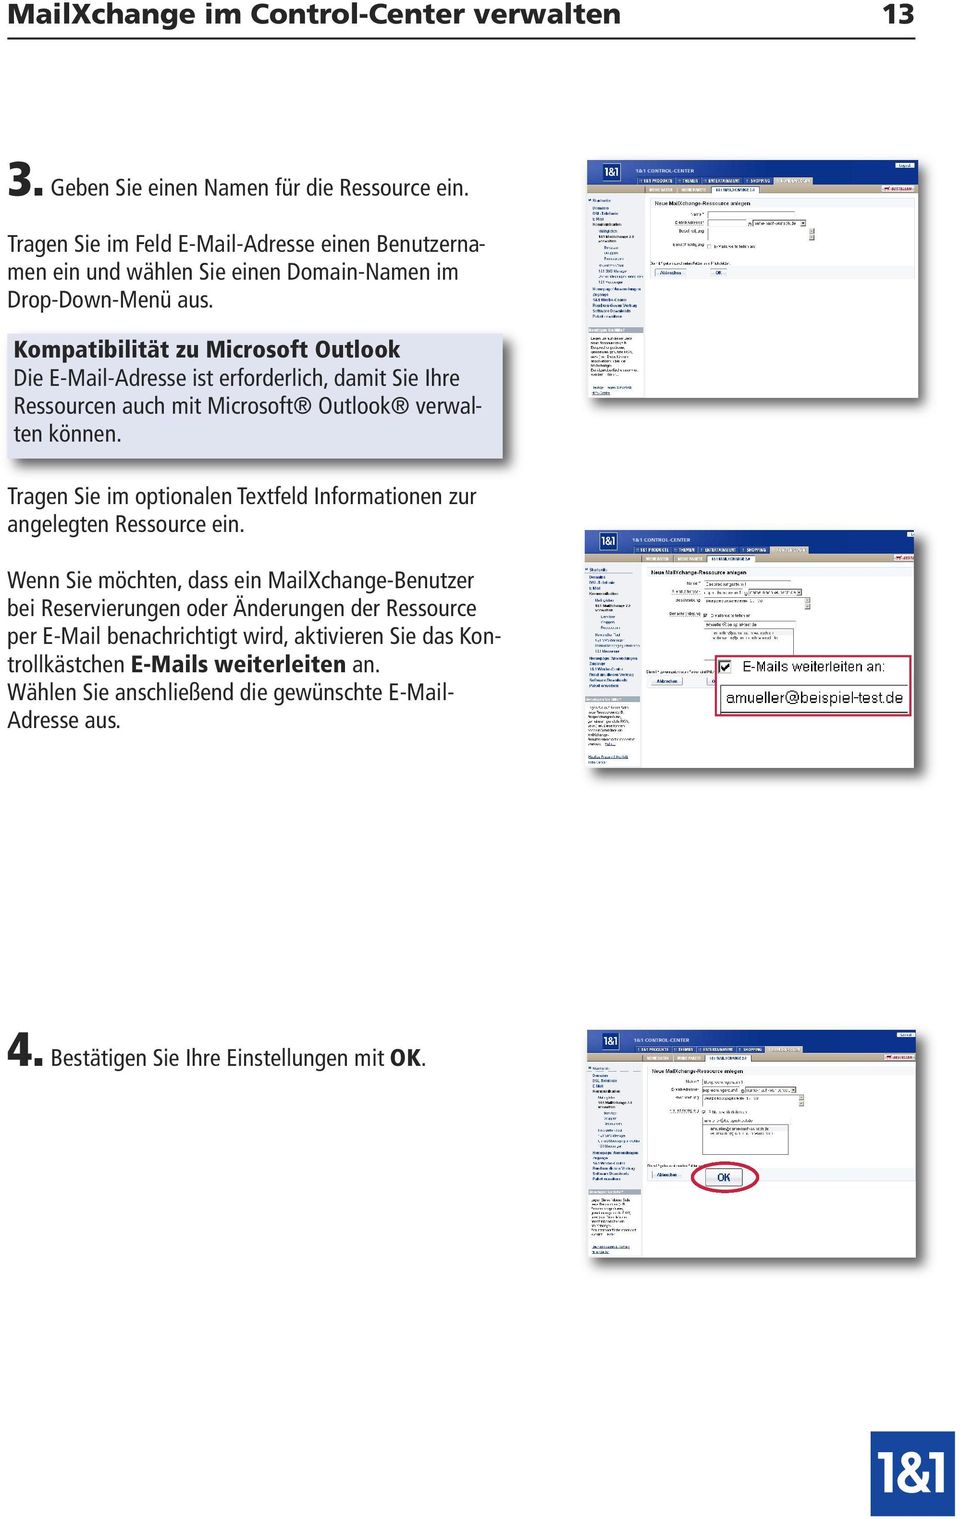 Kompatibilität zu Microsoft Outlook Die E-Mail-Adresse ist erforderlich, damit Sie Ihre Ressourcen auch mit Microsoft Outlook verwalten können.